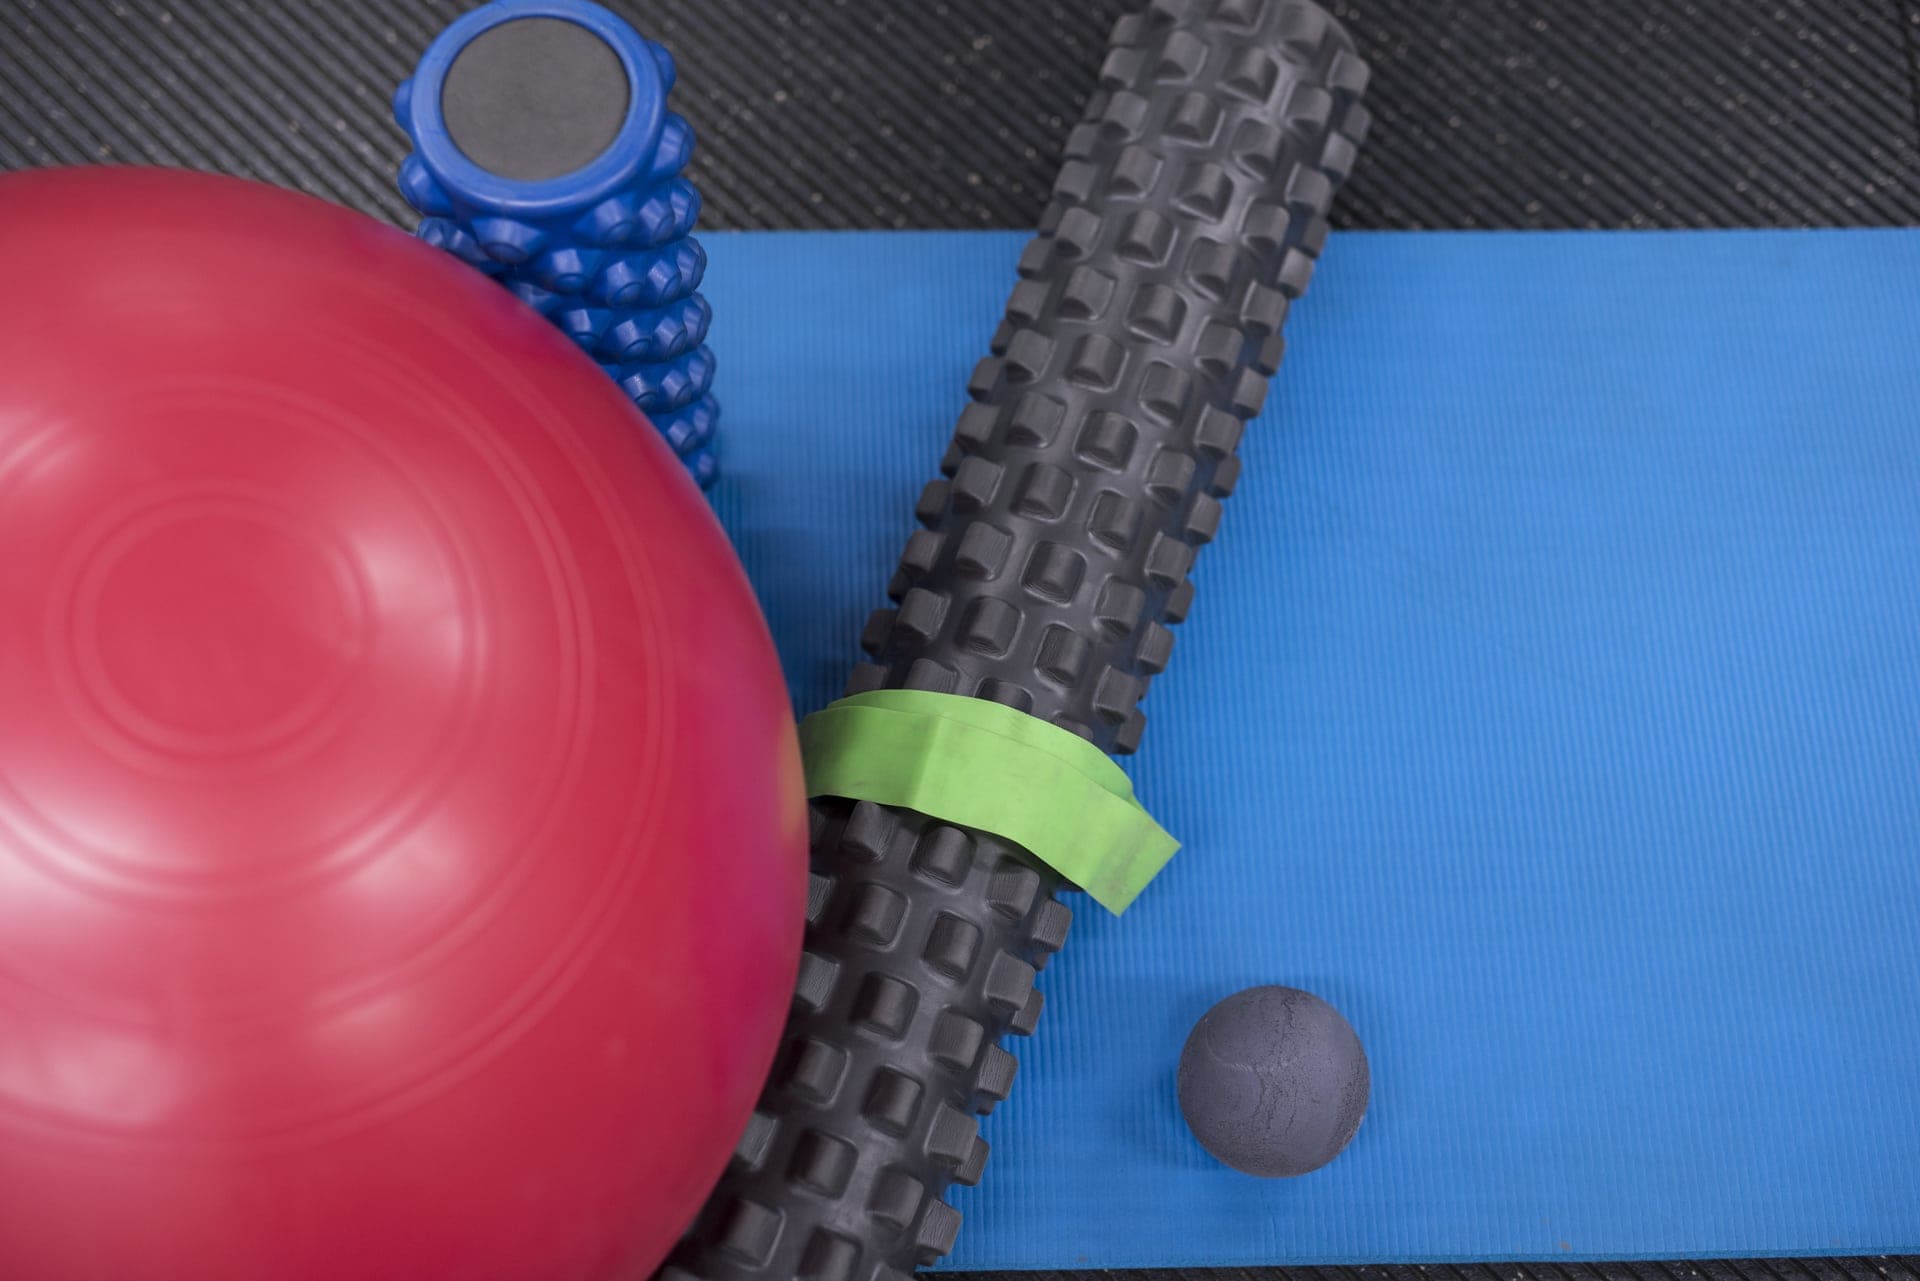 Foam roller, band, ball, exercise mat